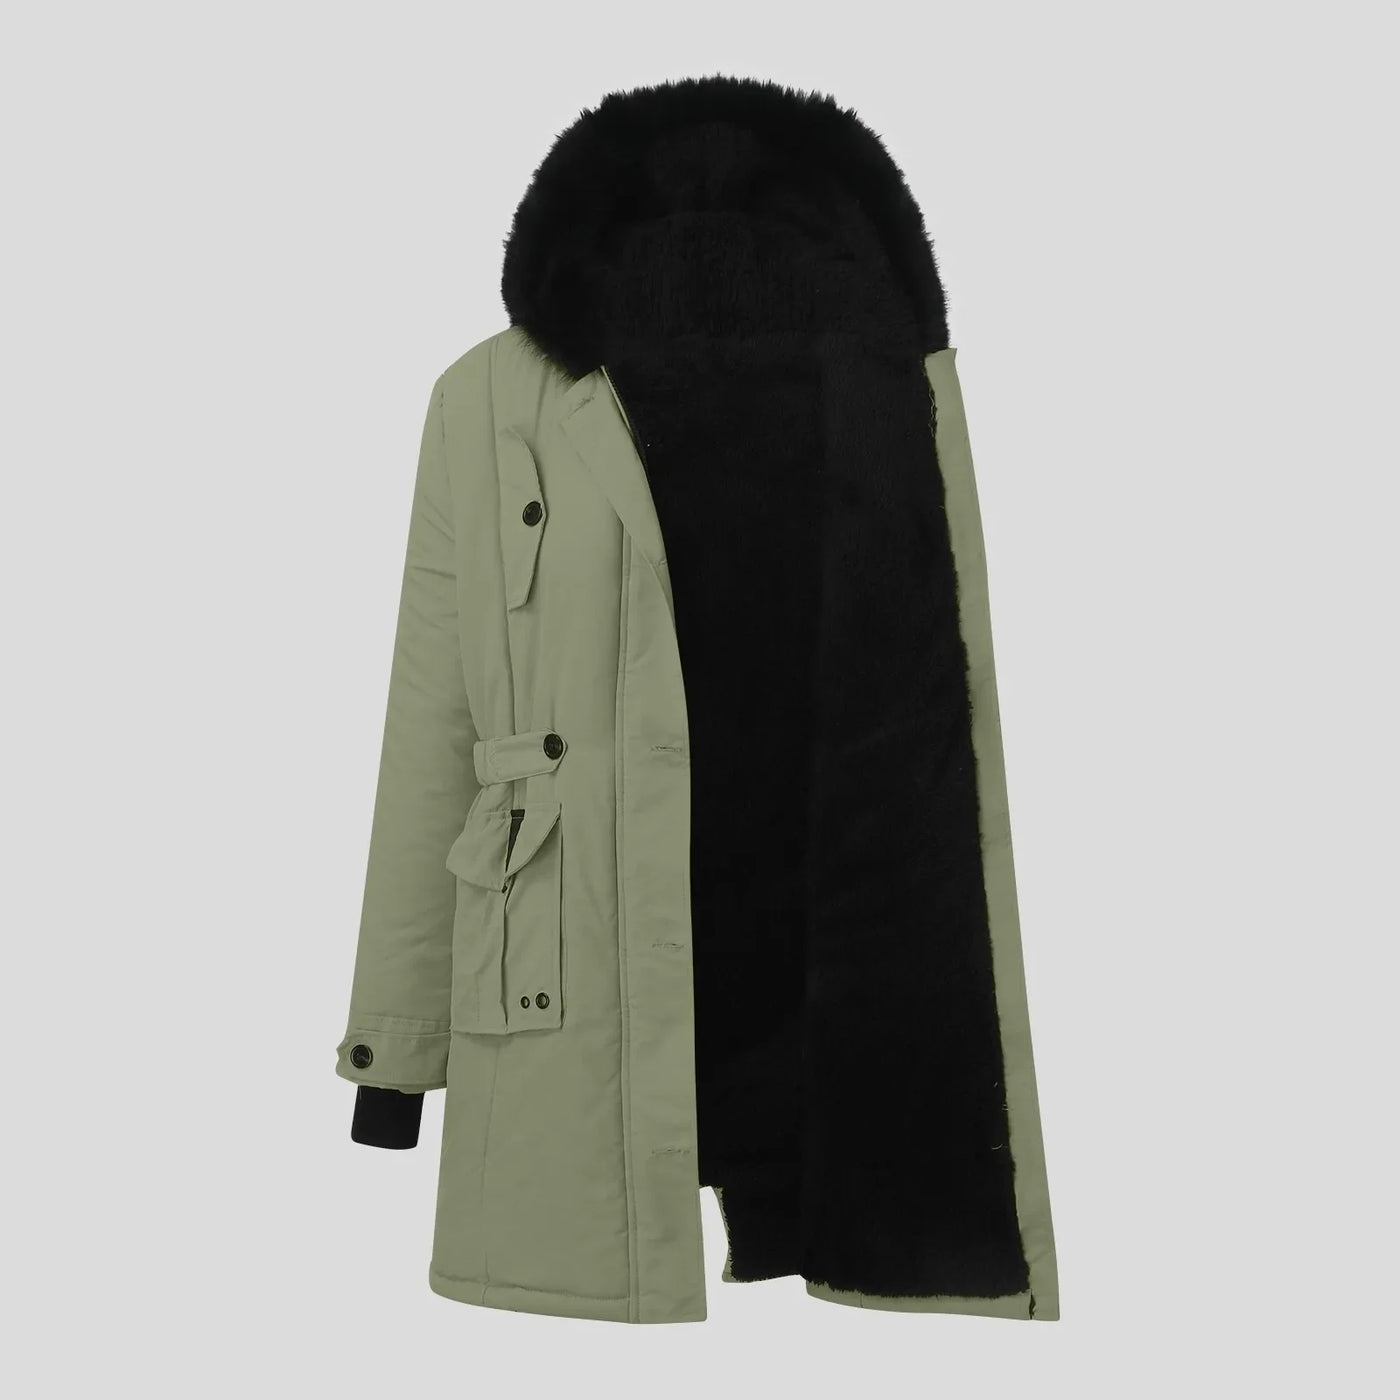 Women's Winter Coat